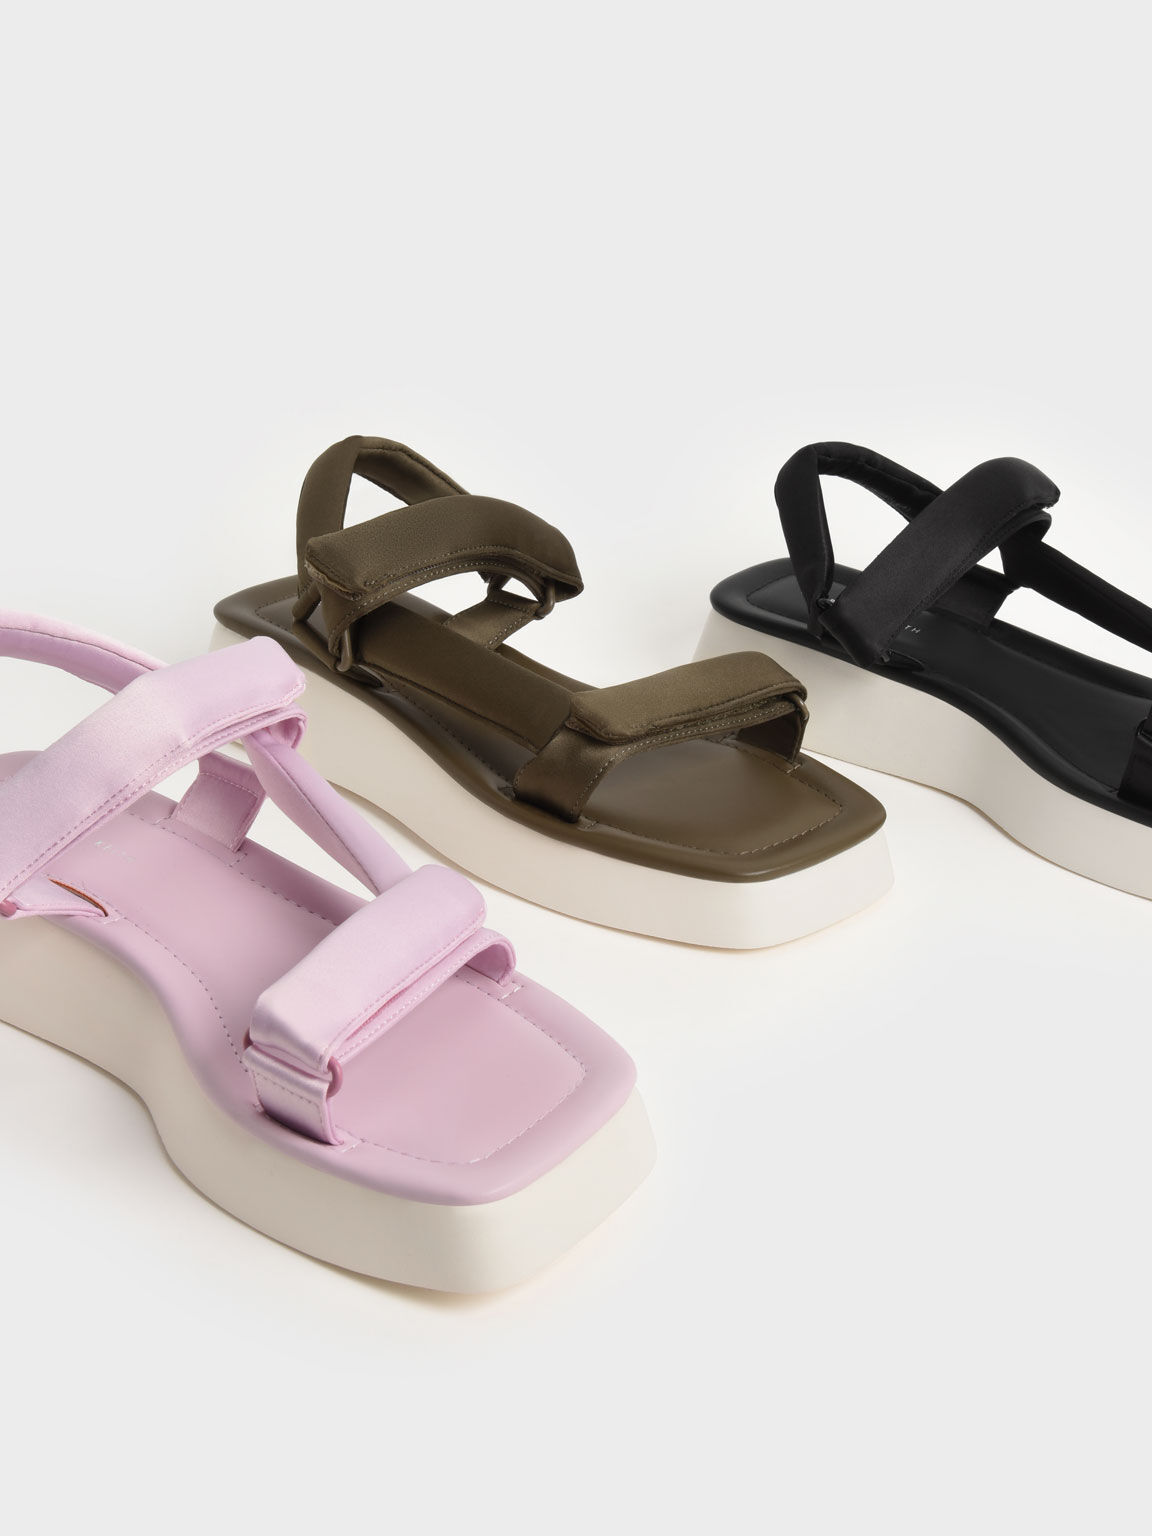 Satin Padded Straps Flatform Sandals, Lilac, hi-res